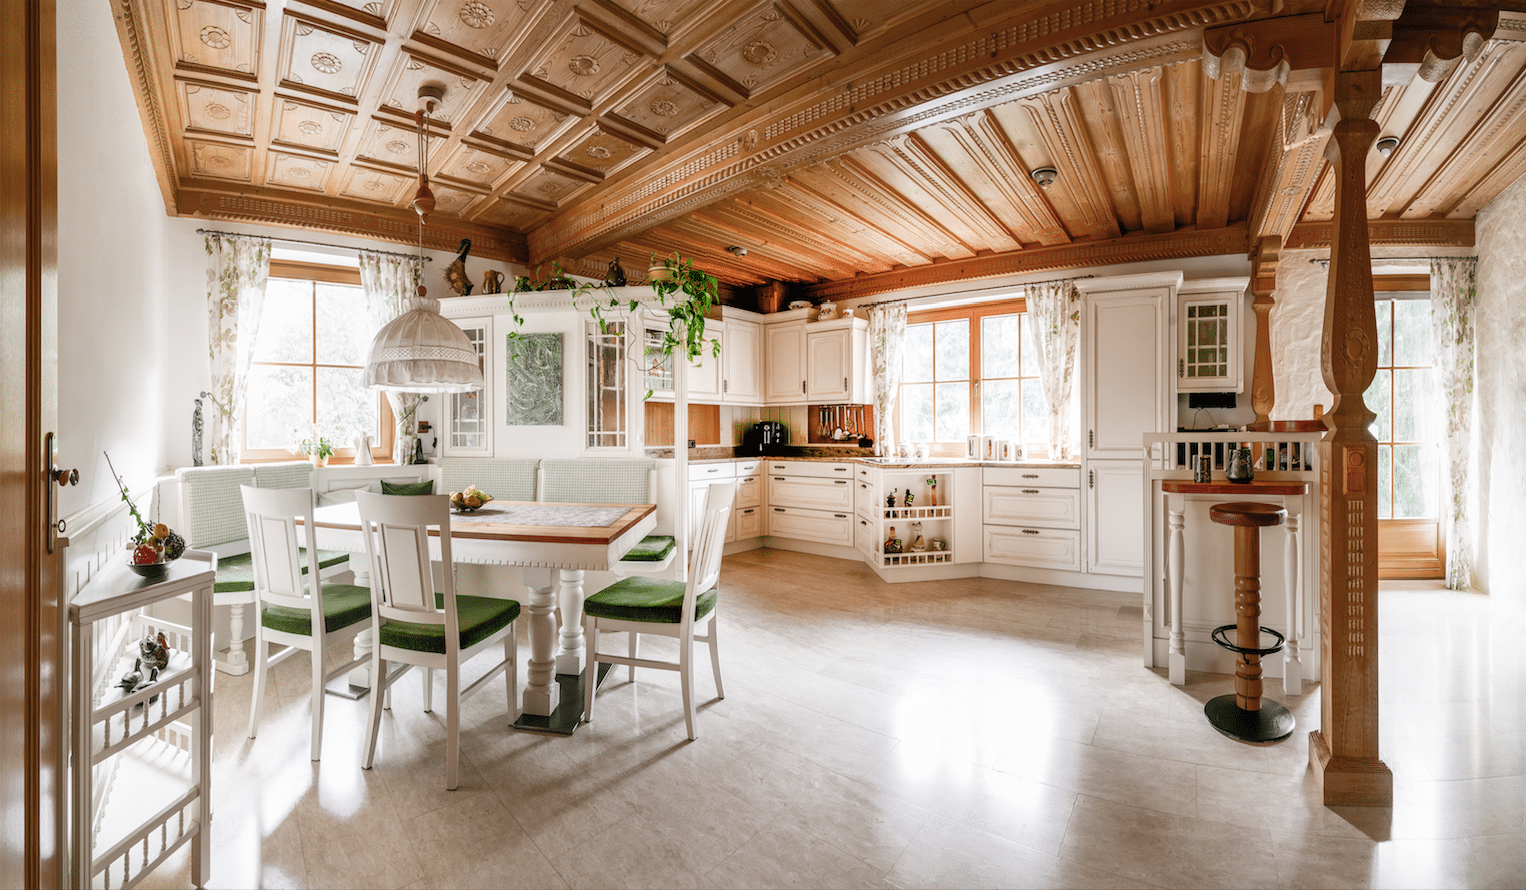 Lichtdurchflutete Küche vom Traditionsunternehmen Böhm Möbel, gefertigt im Landhausstil, mit weißen Einbauschränken, kunstvoll geschnitzten Holzsäulen, traditioneller Holzdecke und einem Esstisch mit Eckbank und Sesseln.